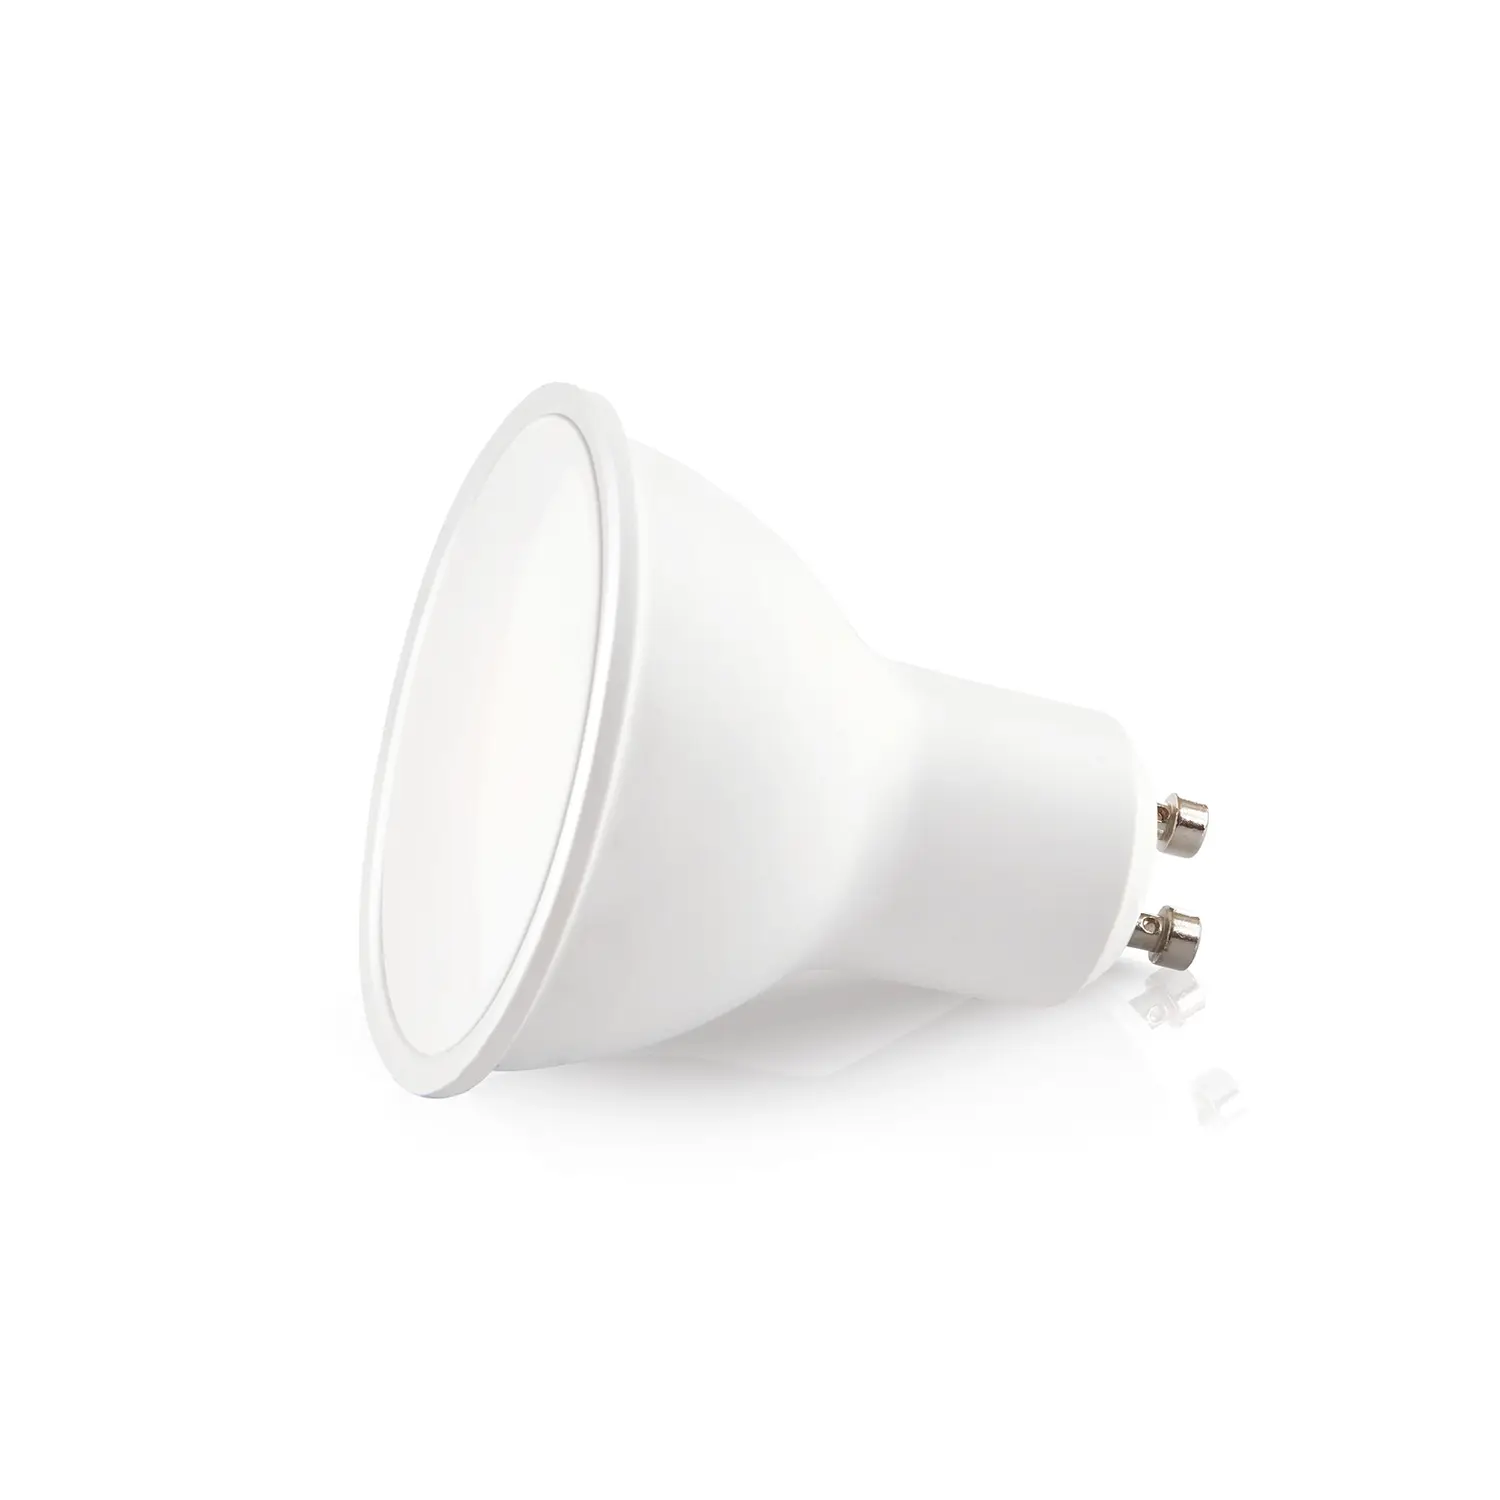 immagine del prodotto lampadina led faretto spot 230v gu10 1 watt bianco naturale